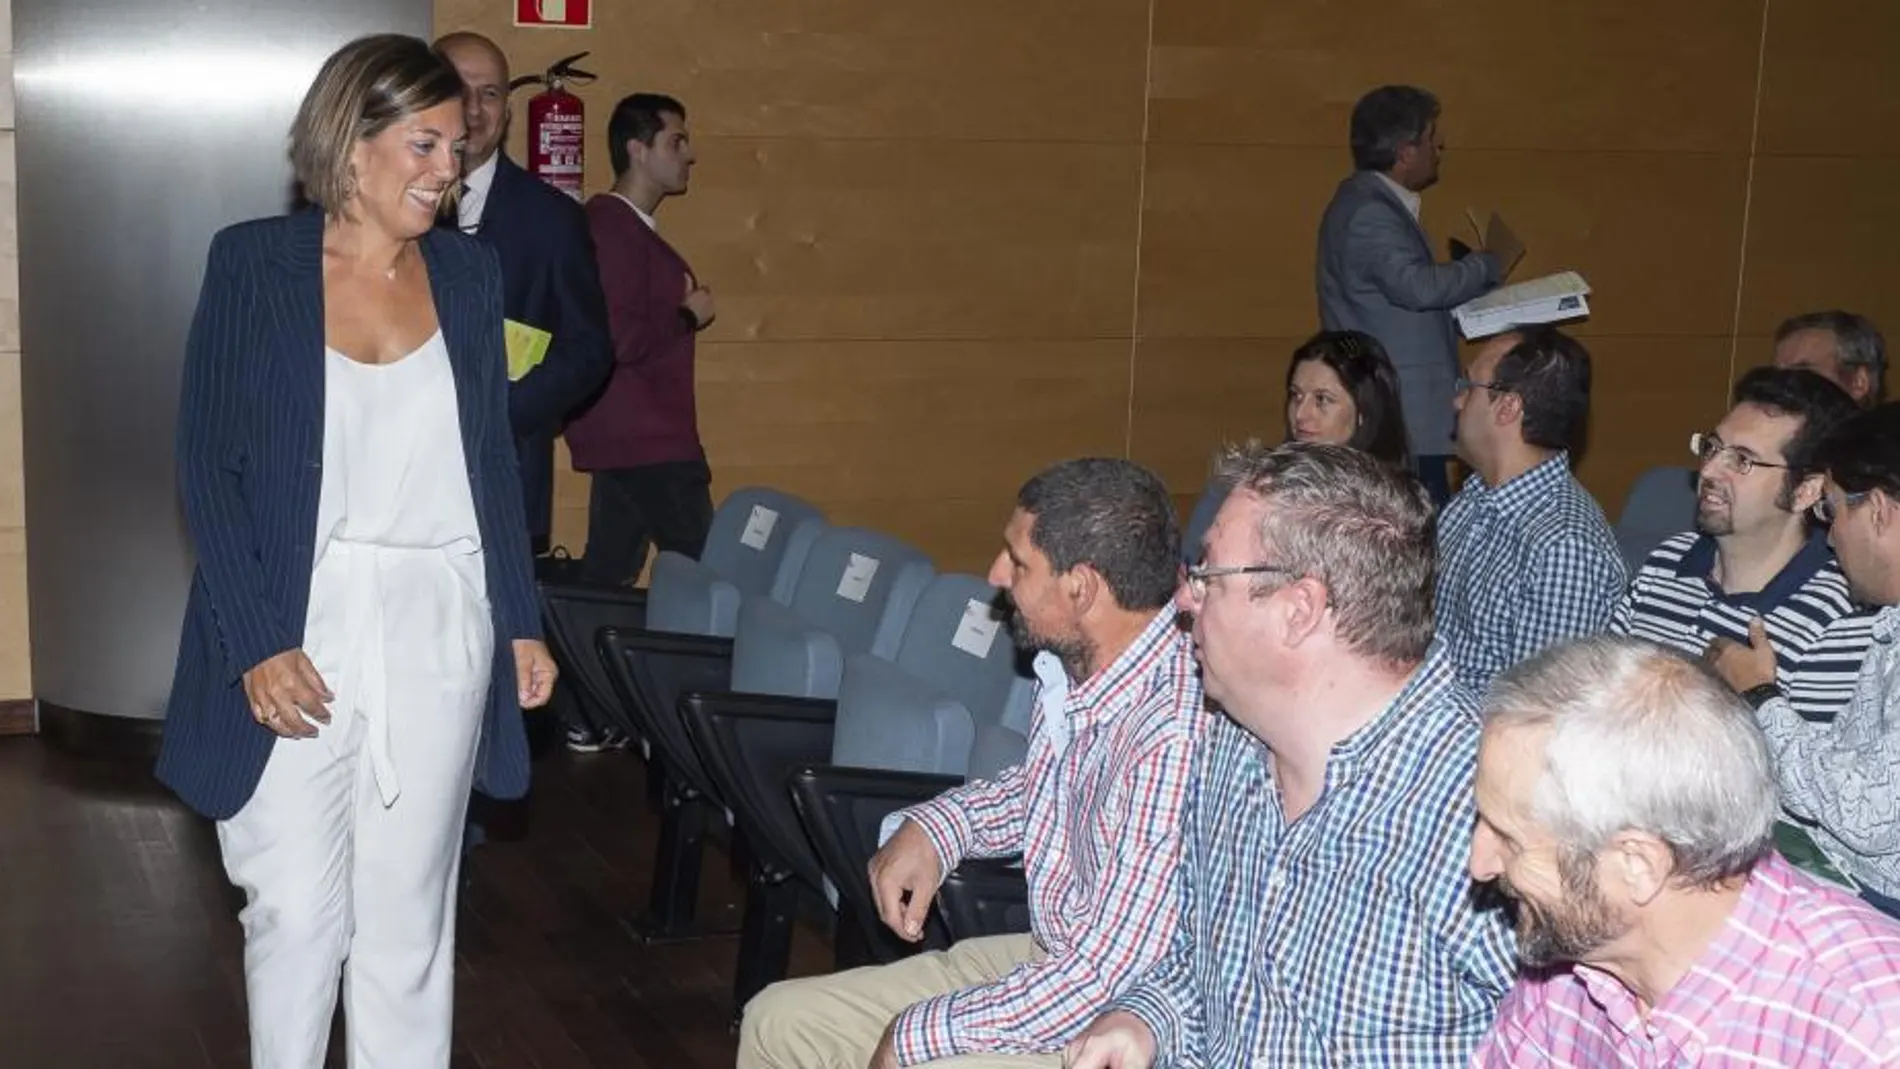 La consejera de Agricultura y Ganadería y portavoz de la Junta de Castilla y León, Milagros Marcos, saluda a los asistentes a la presentación del Simulador de Costes en el Sector Ovino